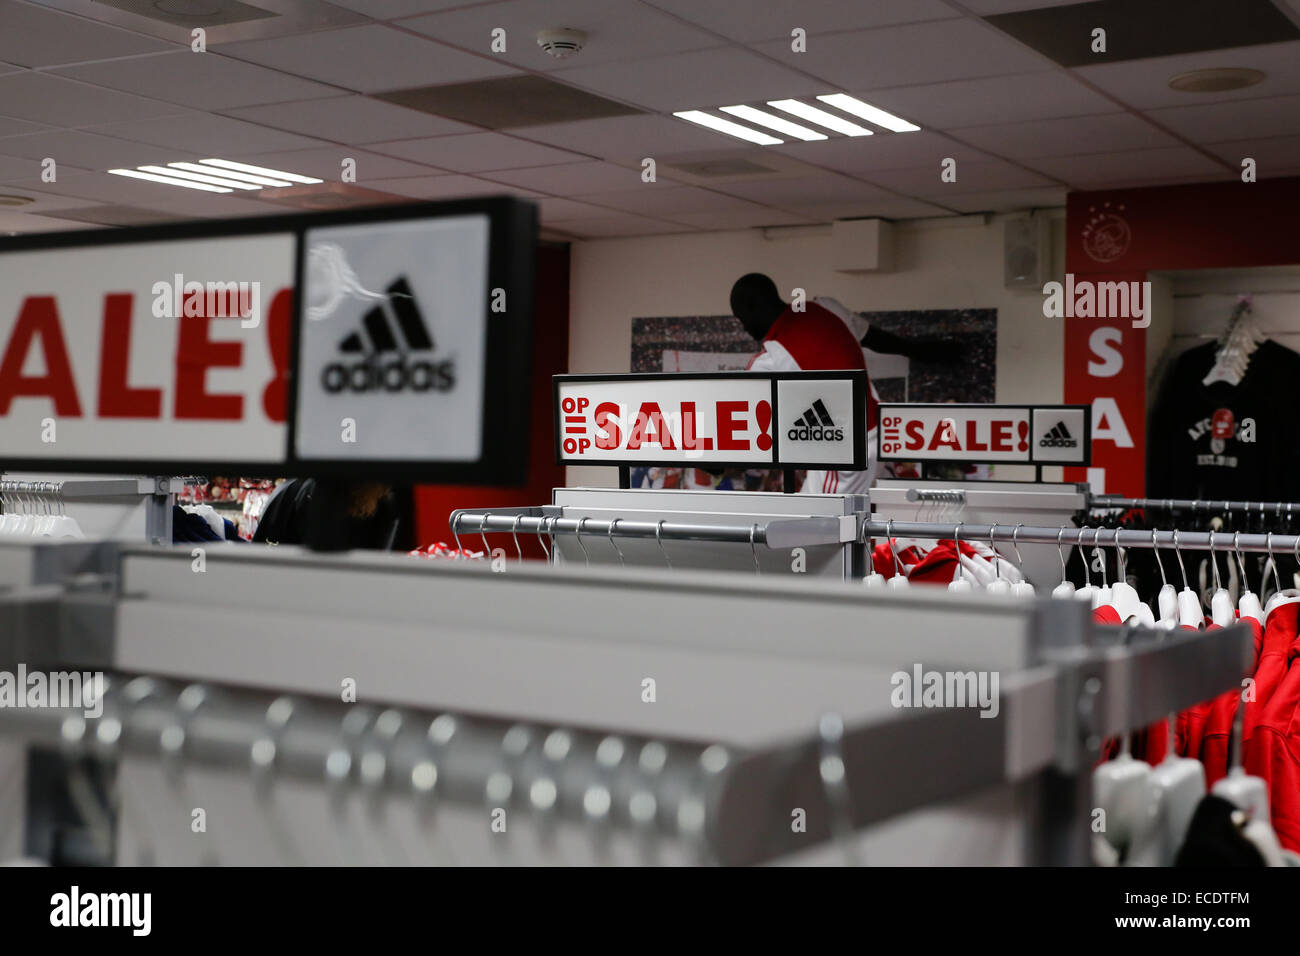 Adidas speichern für Verkauf Zeichen Stockfoto